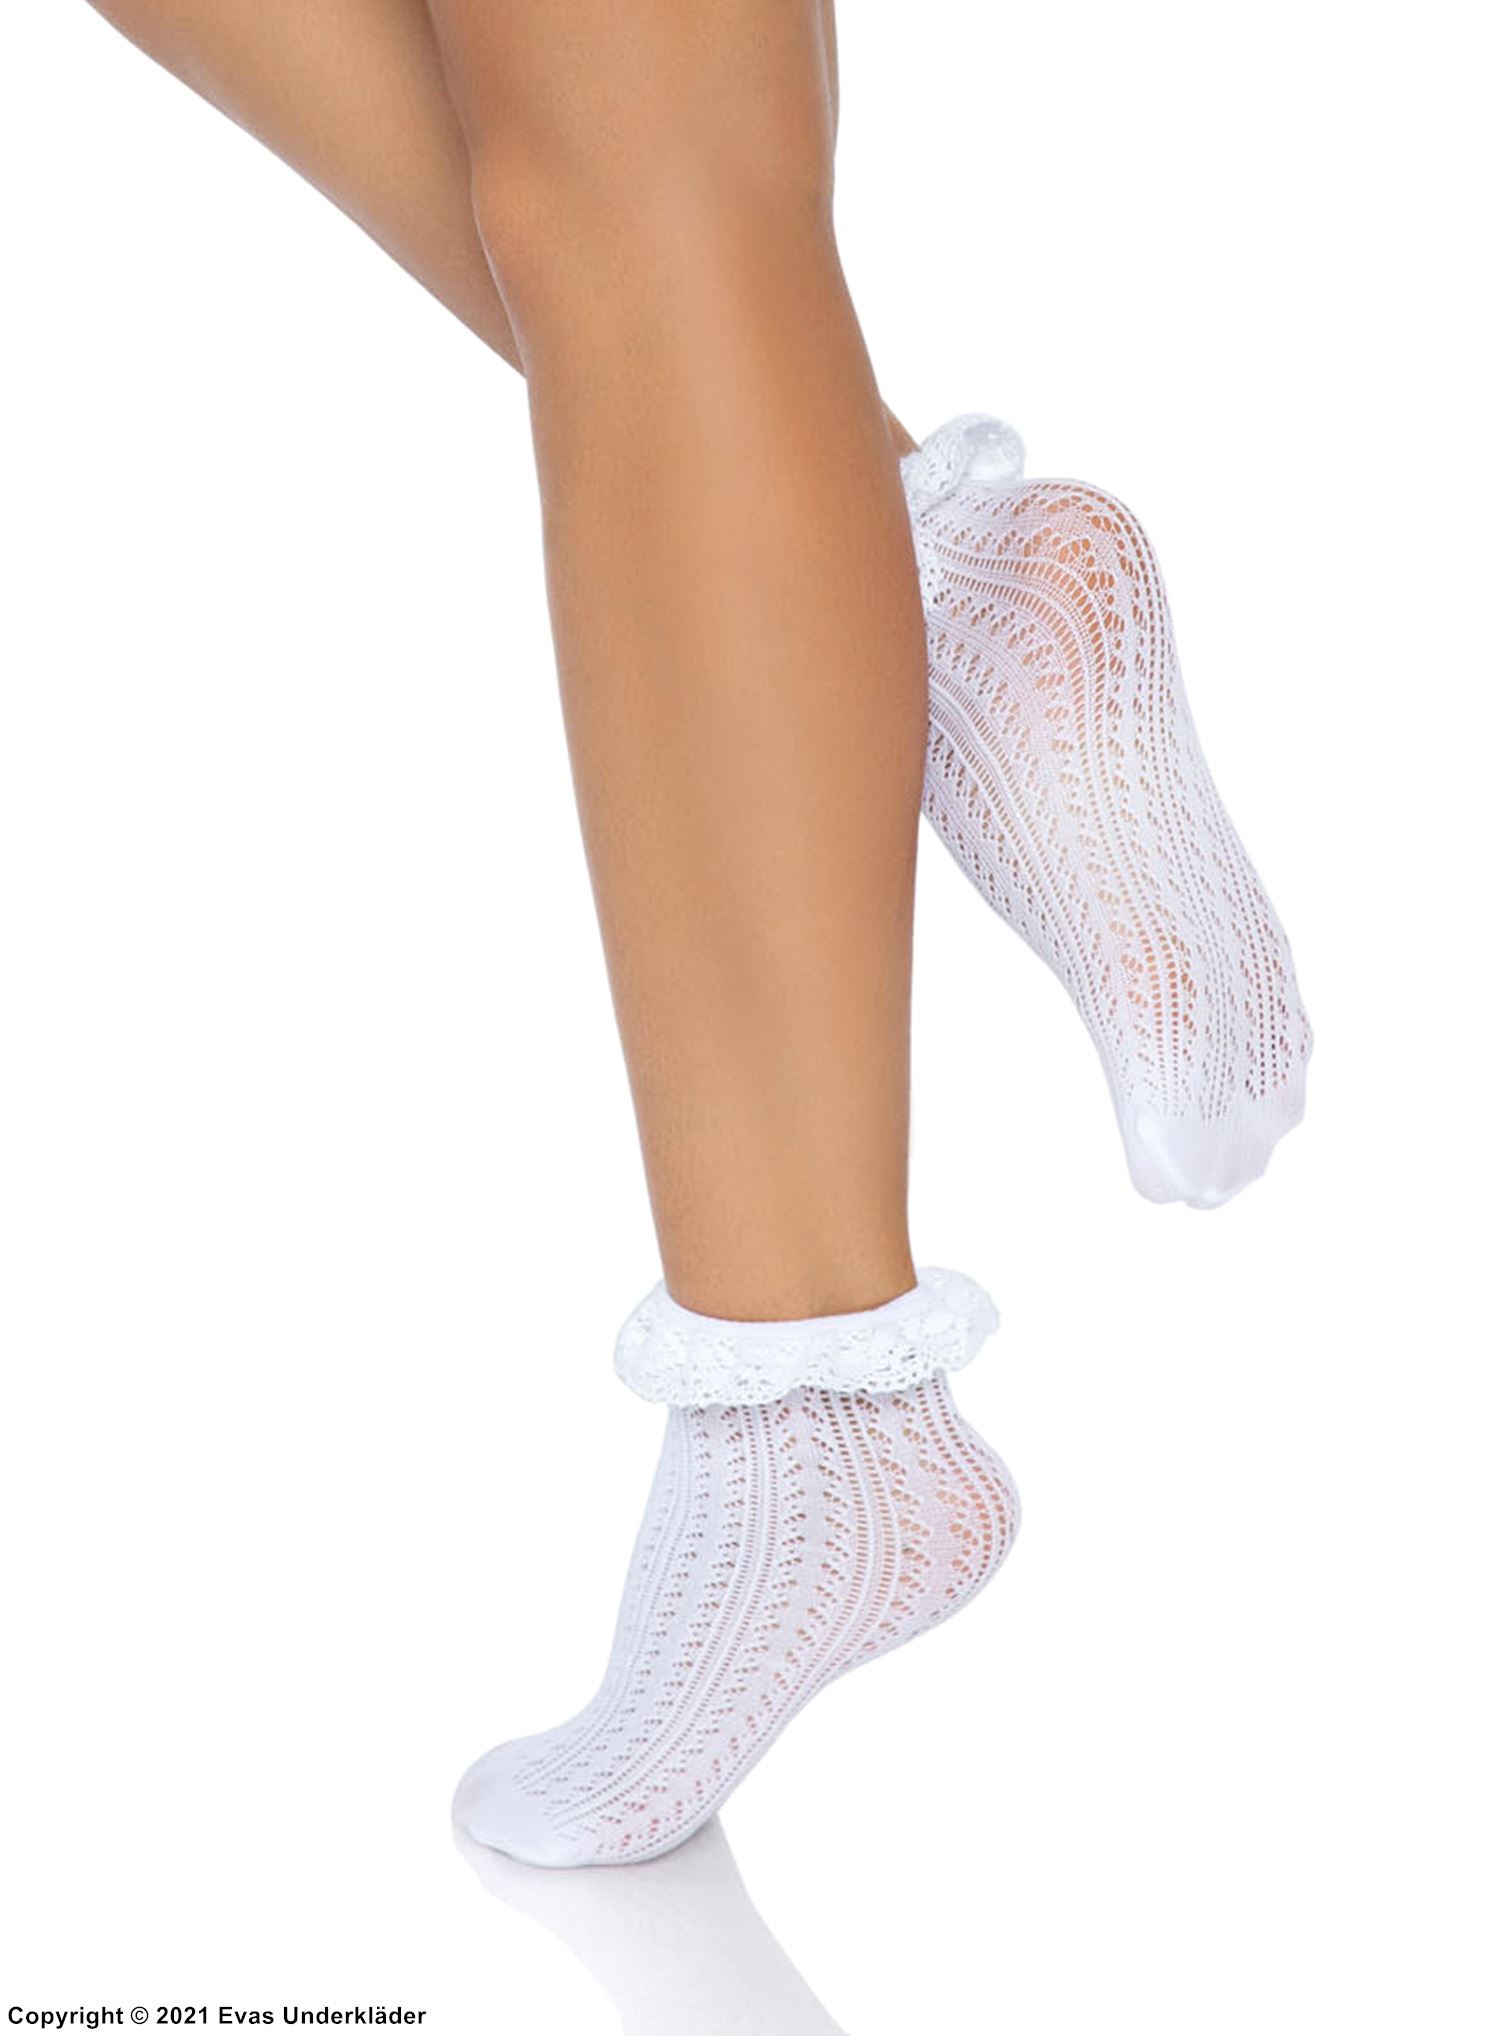 Ankle socks, crochet lace, ruffle trim